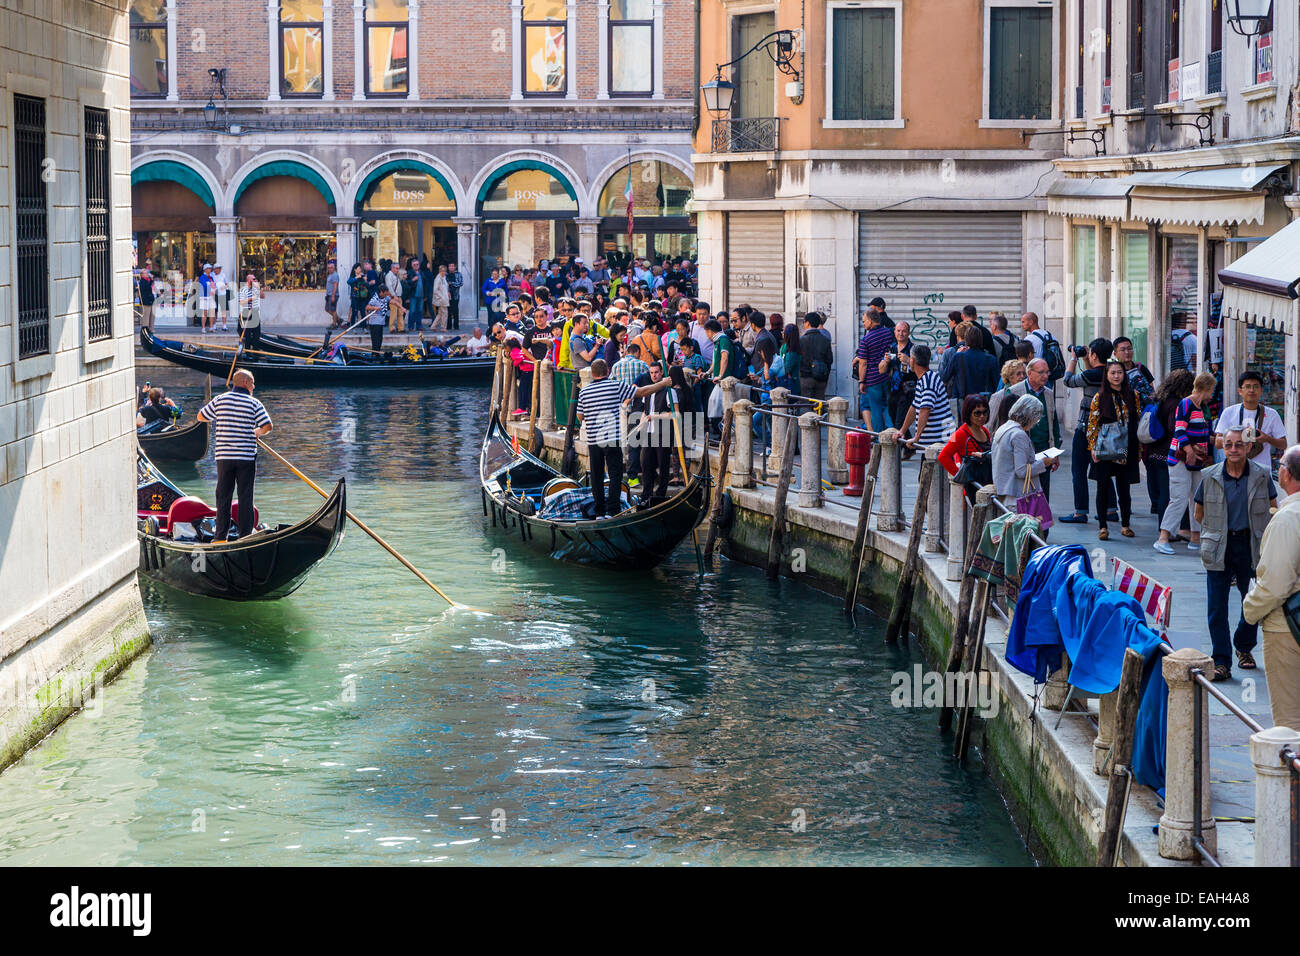 Les touristes faisant la queue pour prendre un en gondole à Venise Italie Banque D'Images